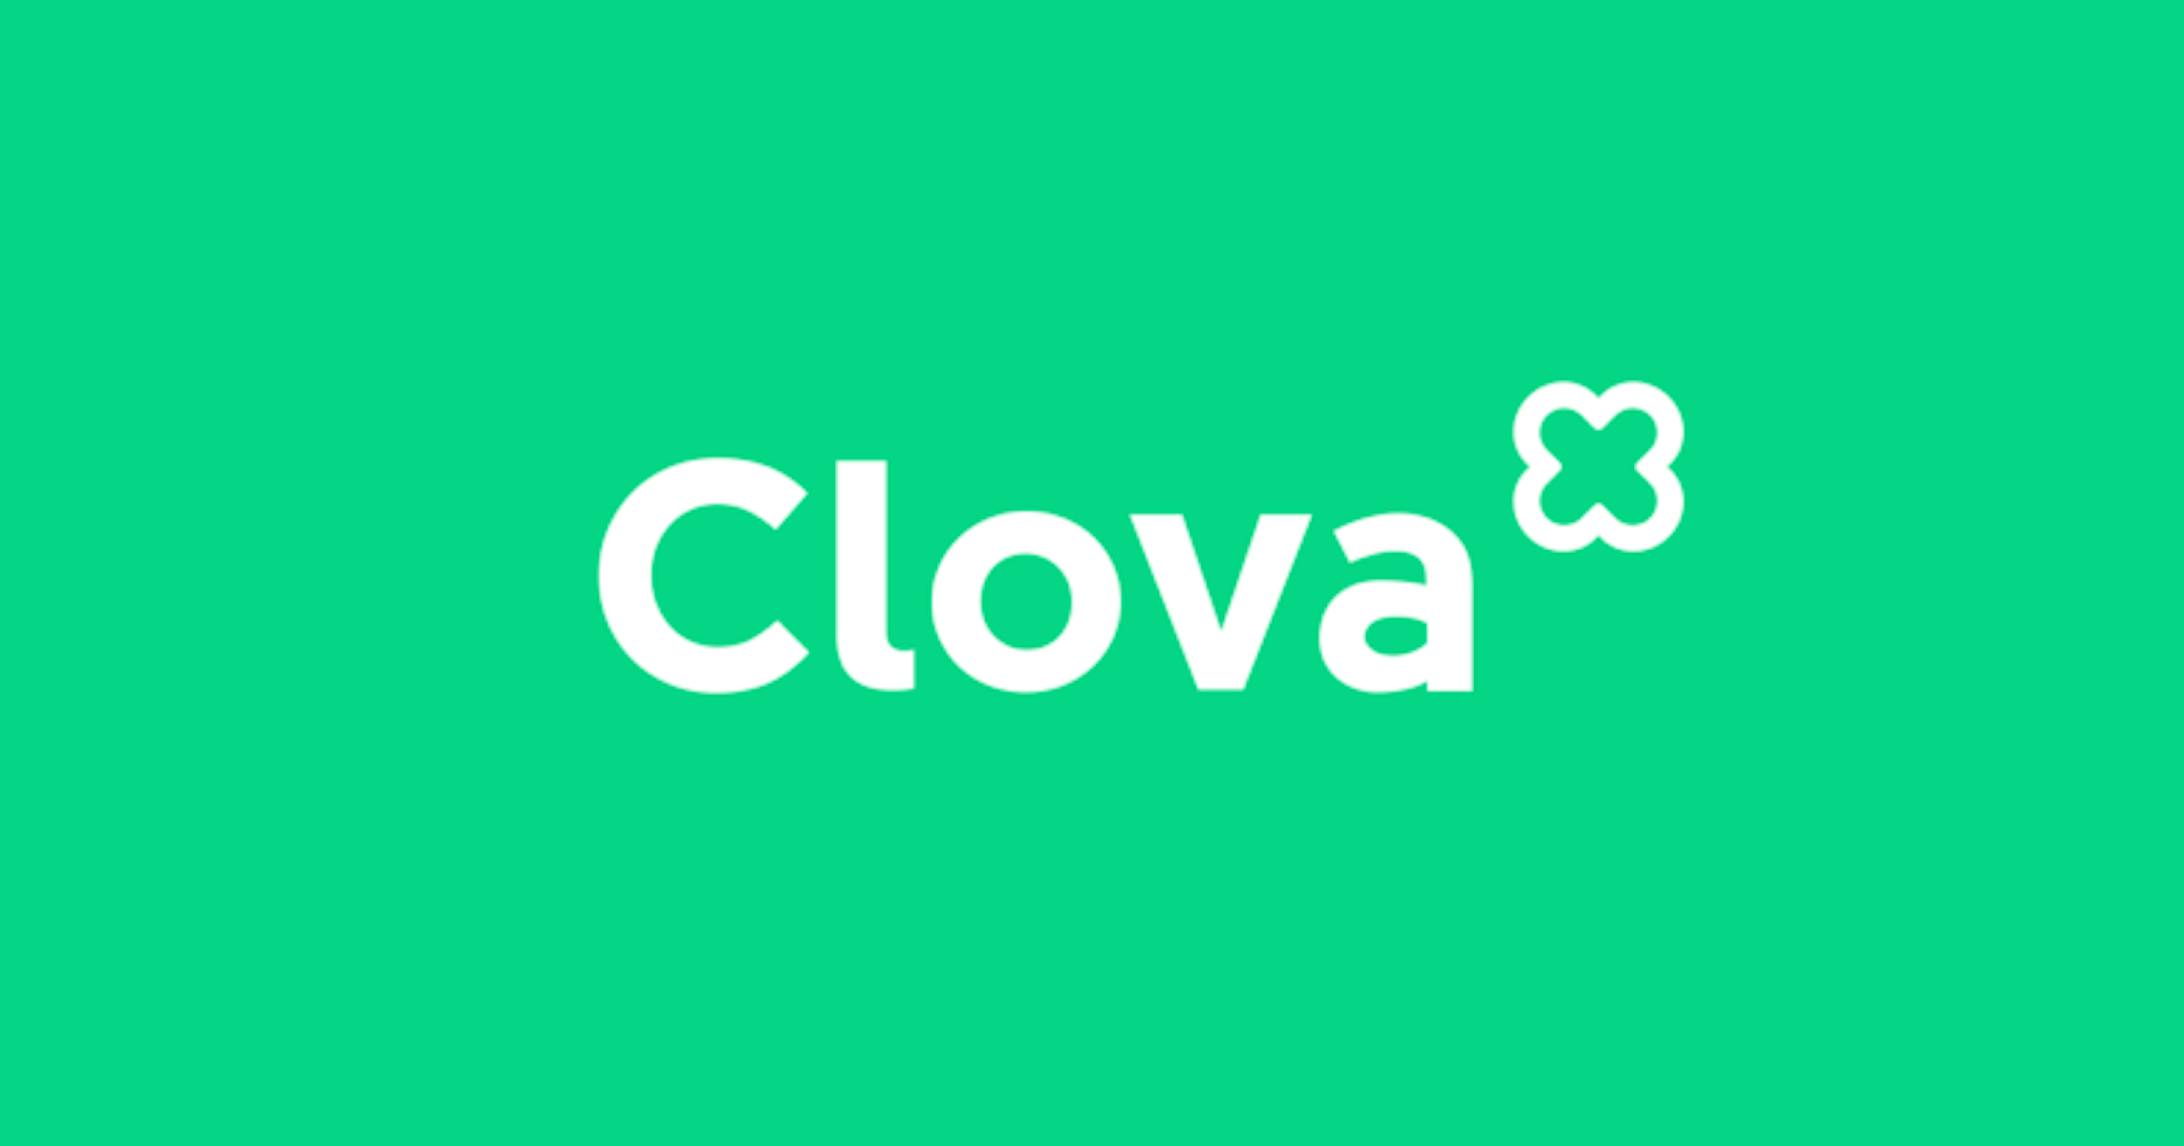  Clova用BGM-1